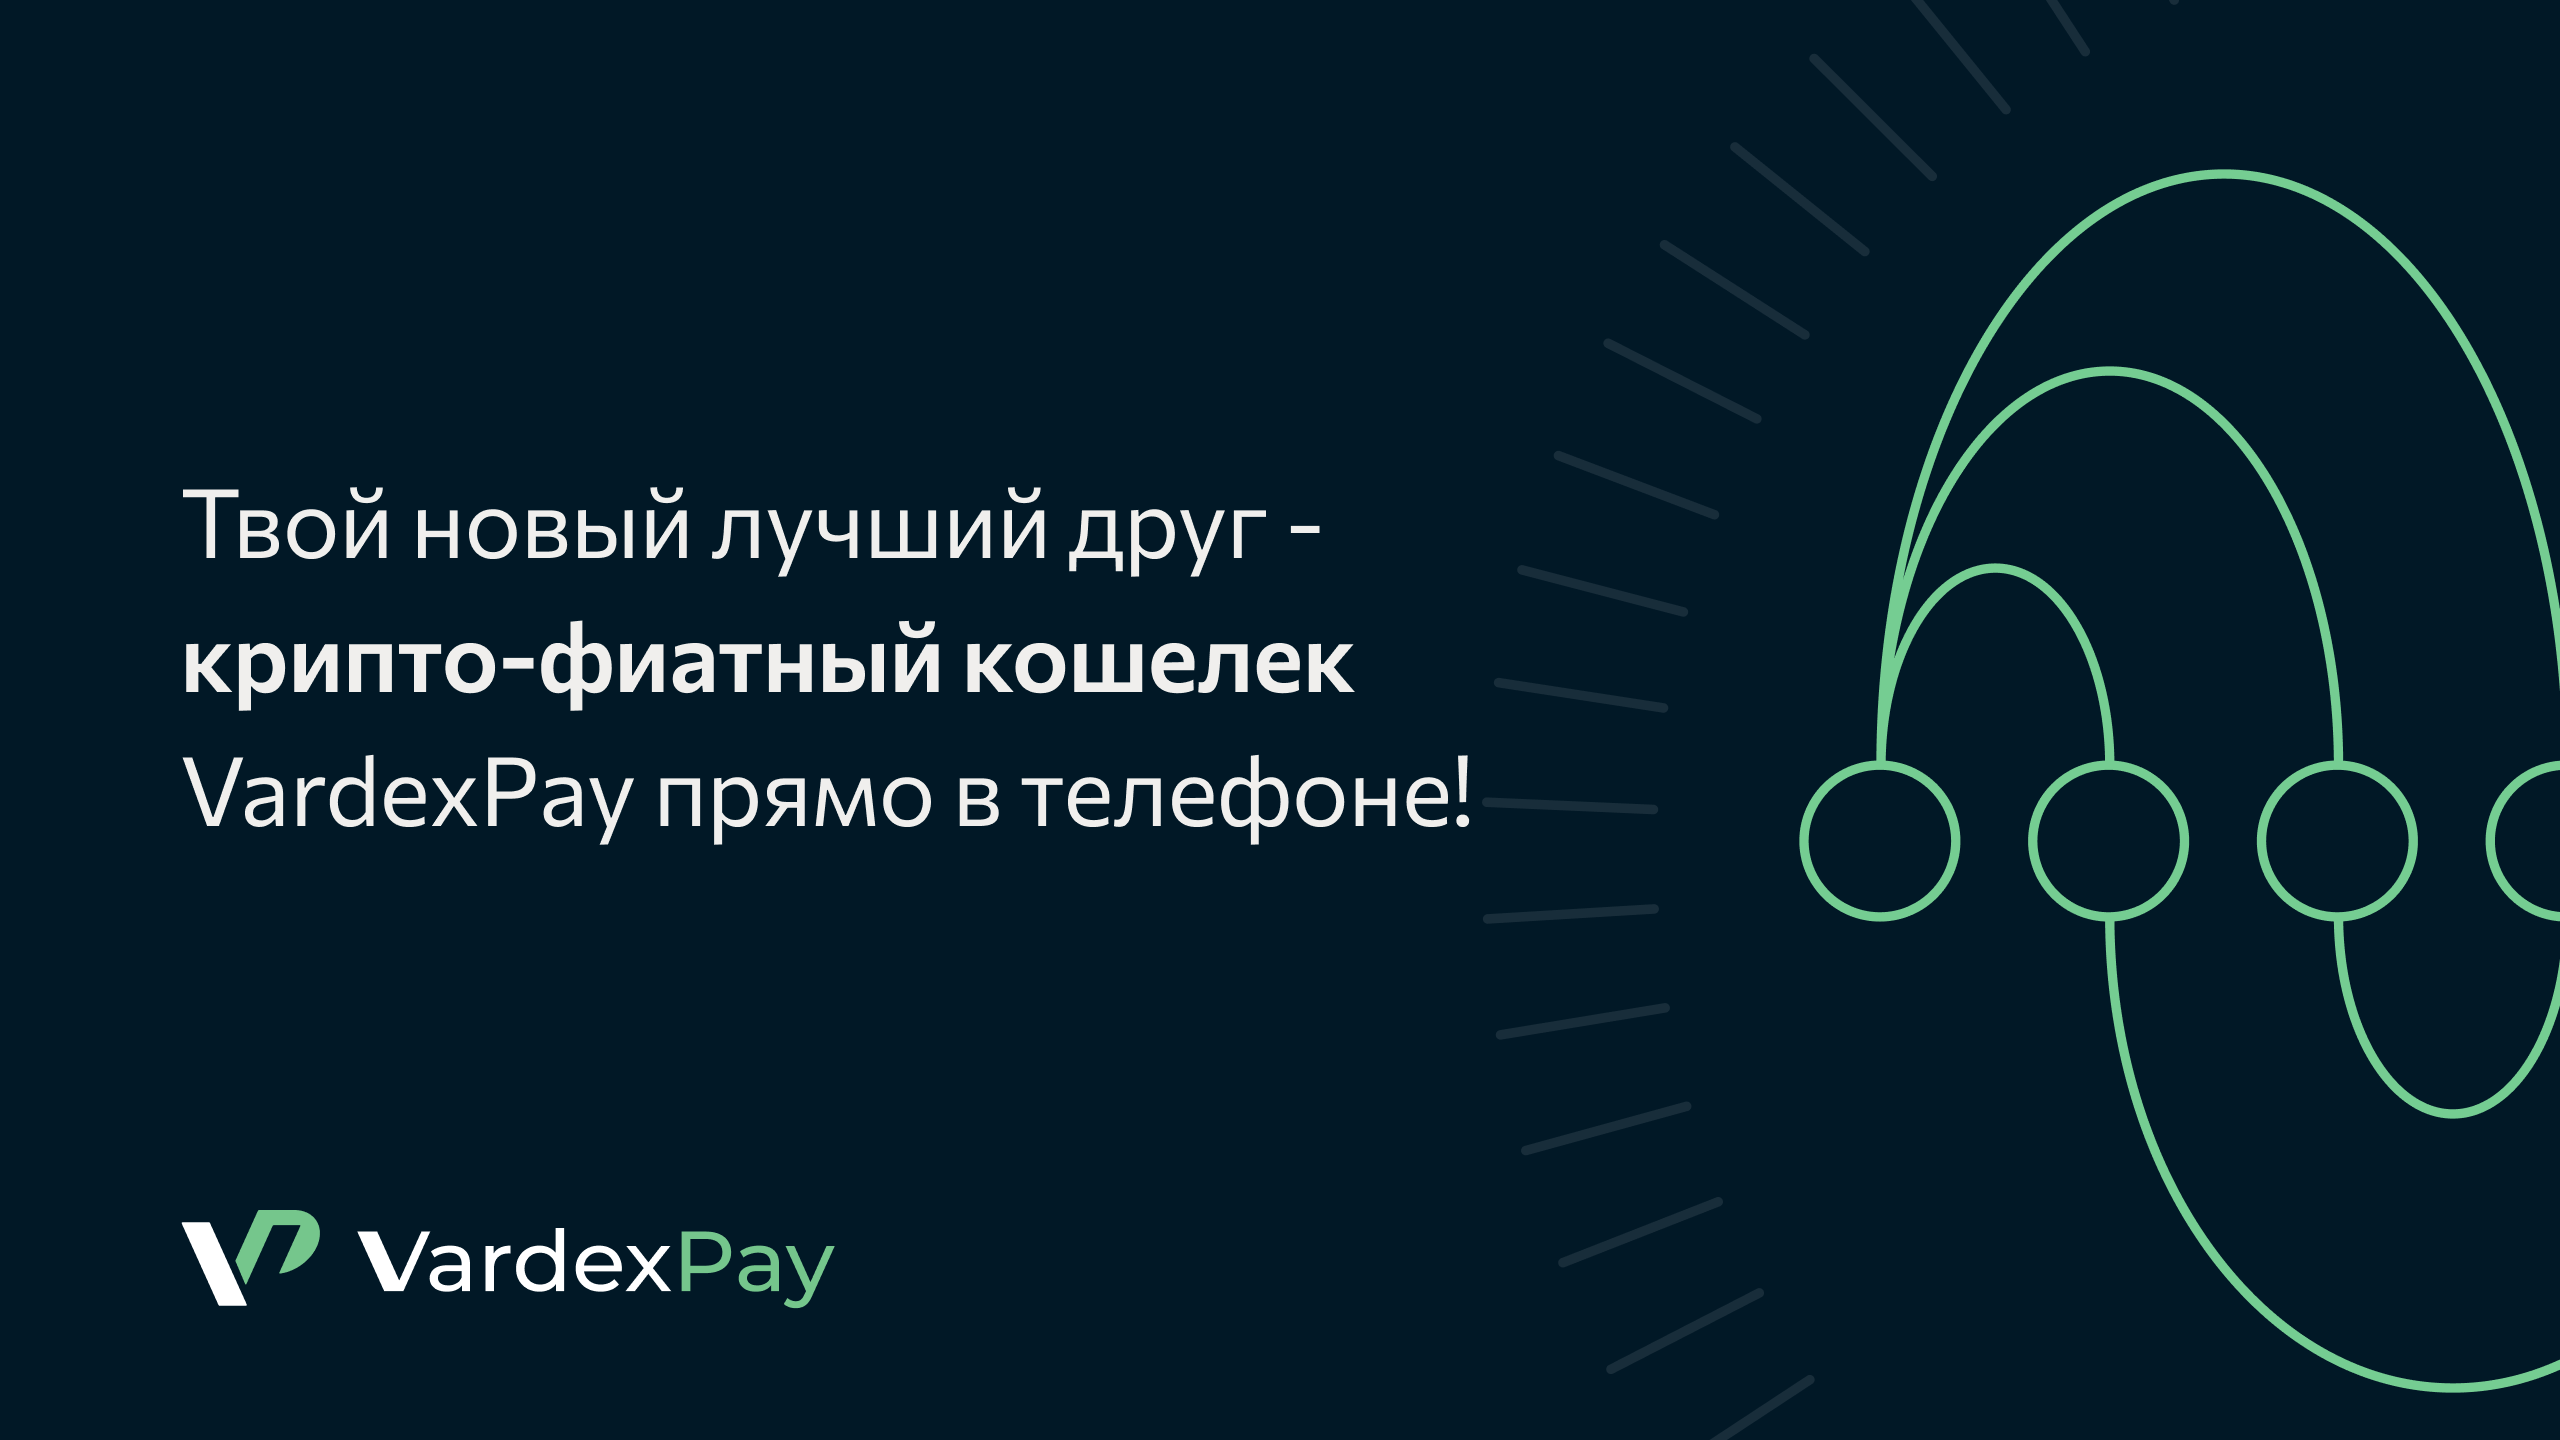 Команда VardexPay представляет инновационное решение для кошелька криптовалют и фиата